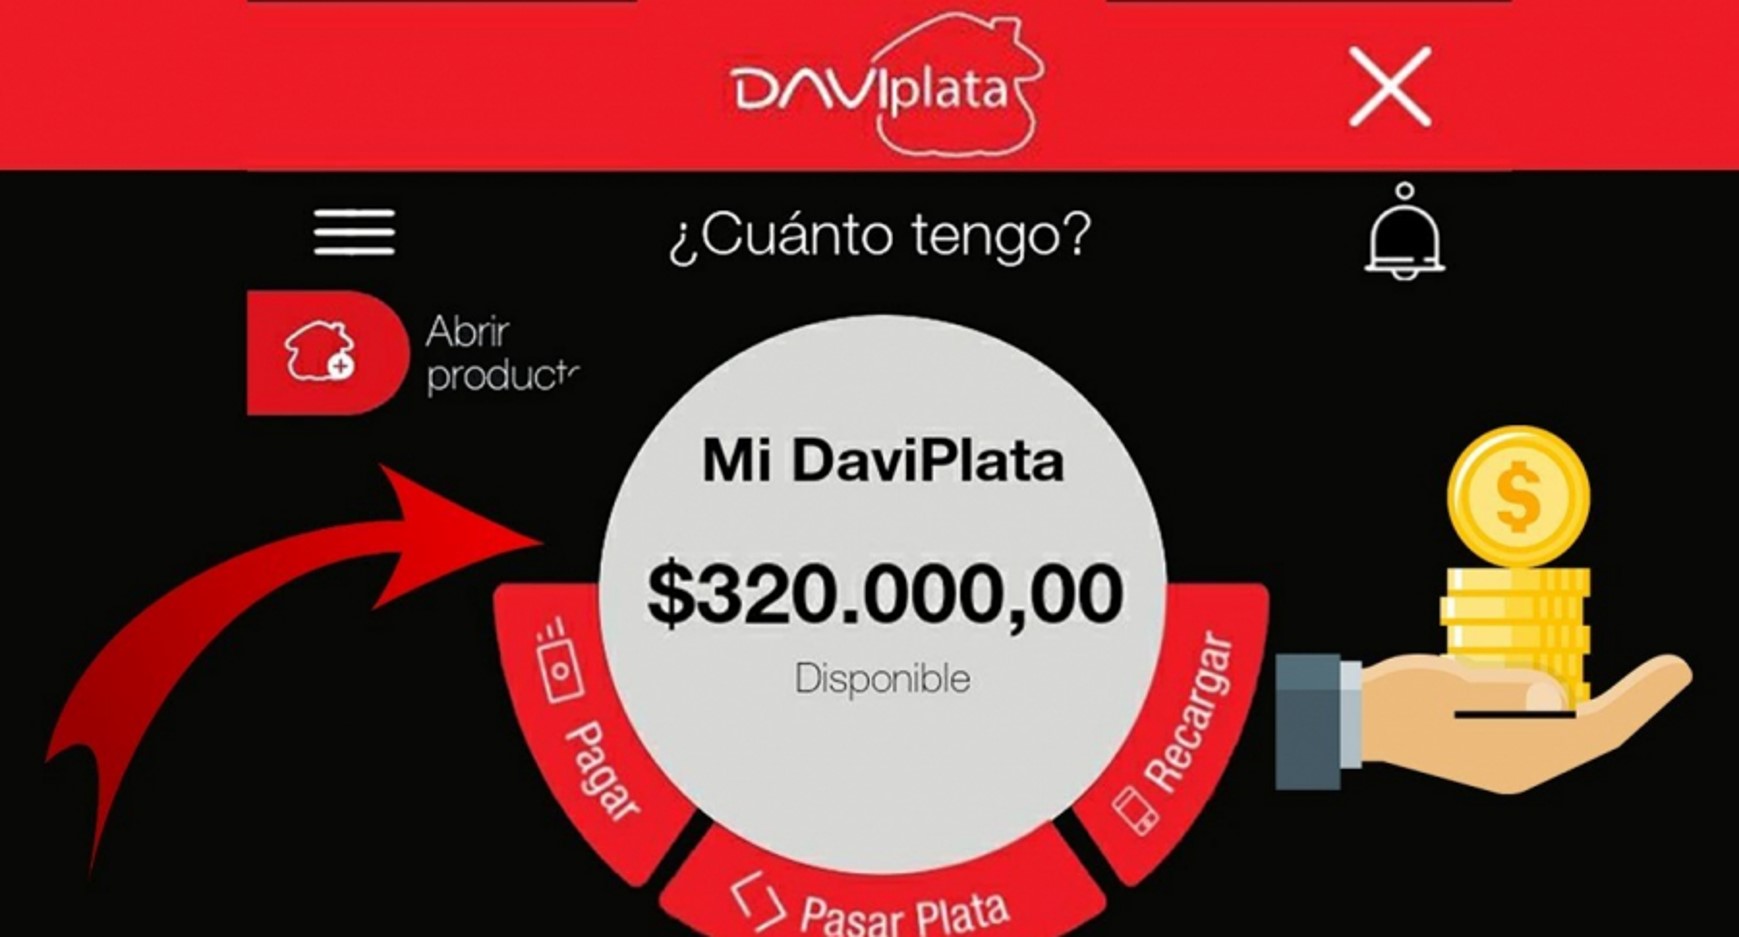 Daviplata (de Davivienda) tienen línea de WhatsApp que no utilizan muchos usuarios. Sirve para transacciones y temas de plata.